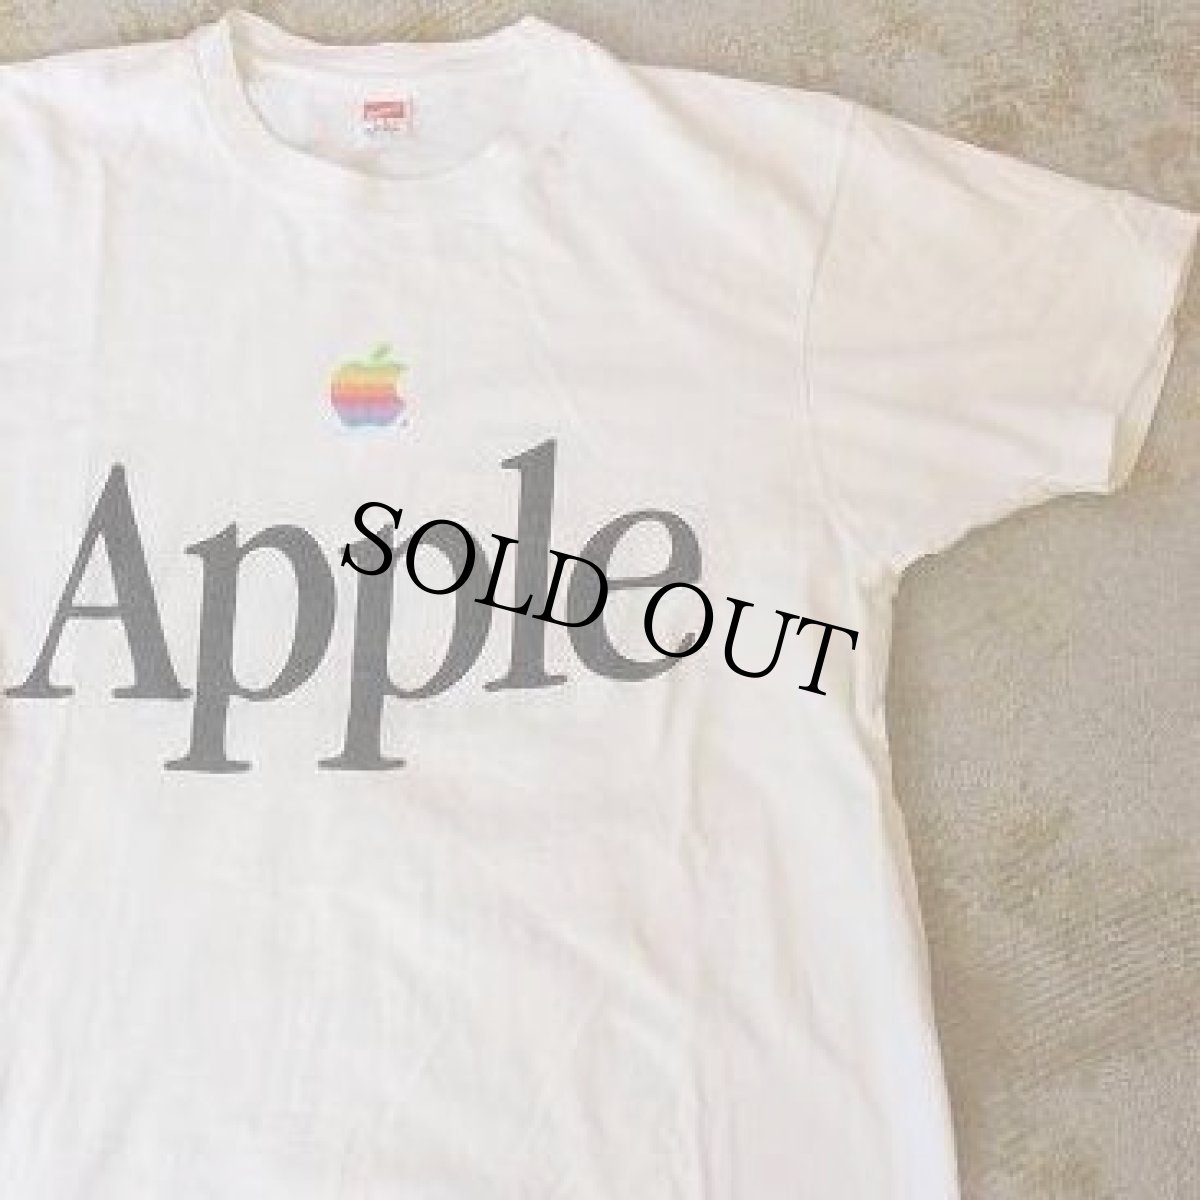 画像1: 80's Apple USA製 "Apple" レインボーロゴTシャツ L (1)